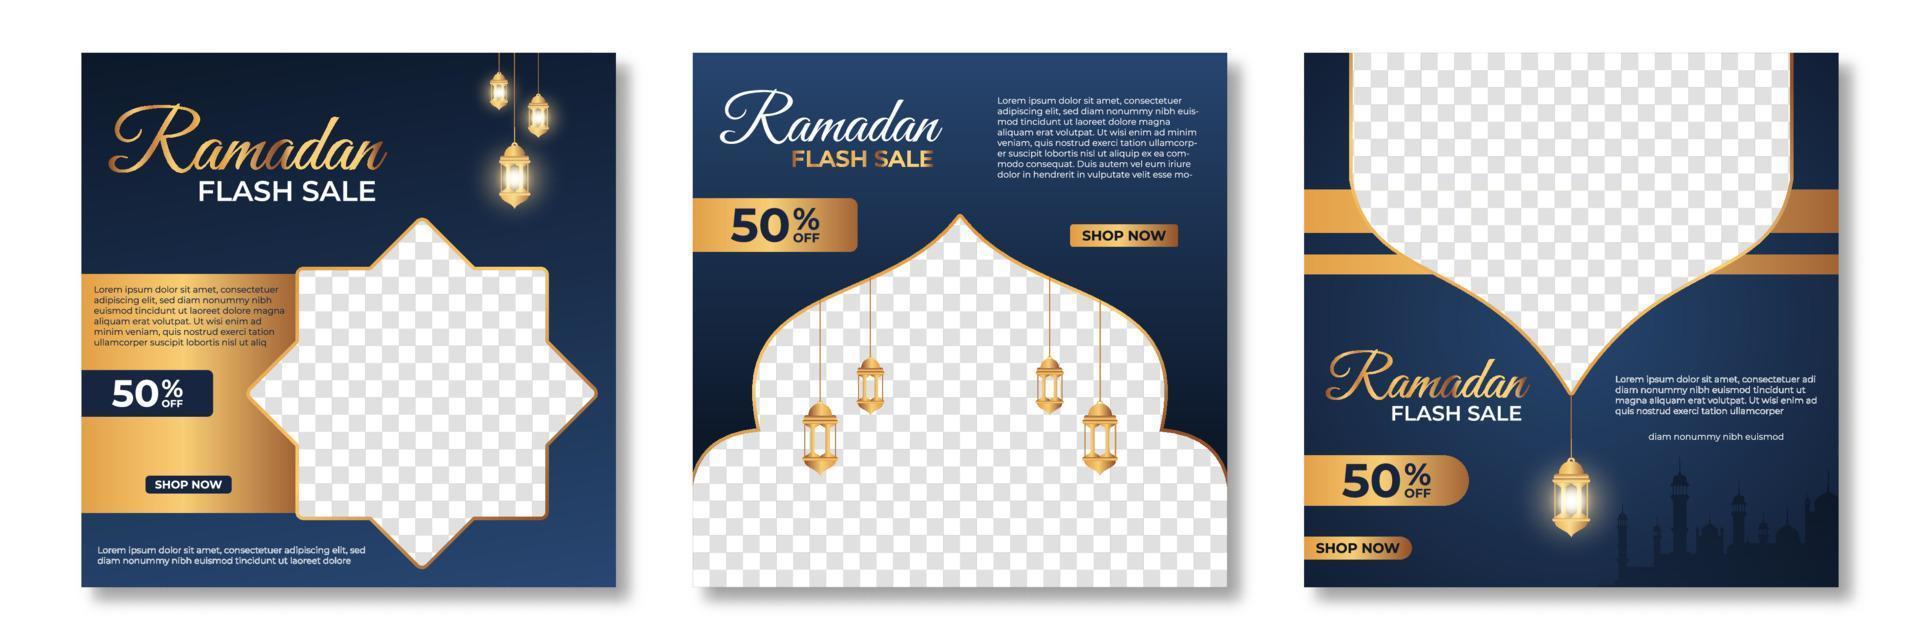 ensemble de modèle de bannière de vente ramadan. conception de modèle de bannière de vente ramadan avec collage de photos. adapté aux publications sur les réseaux sociaux et aux publicités sur le Web. illustration vectorielle vecteur